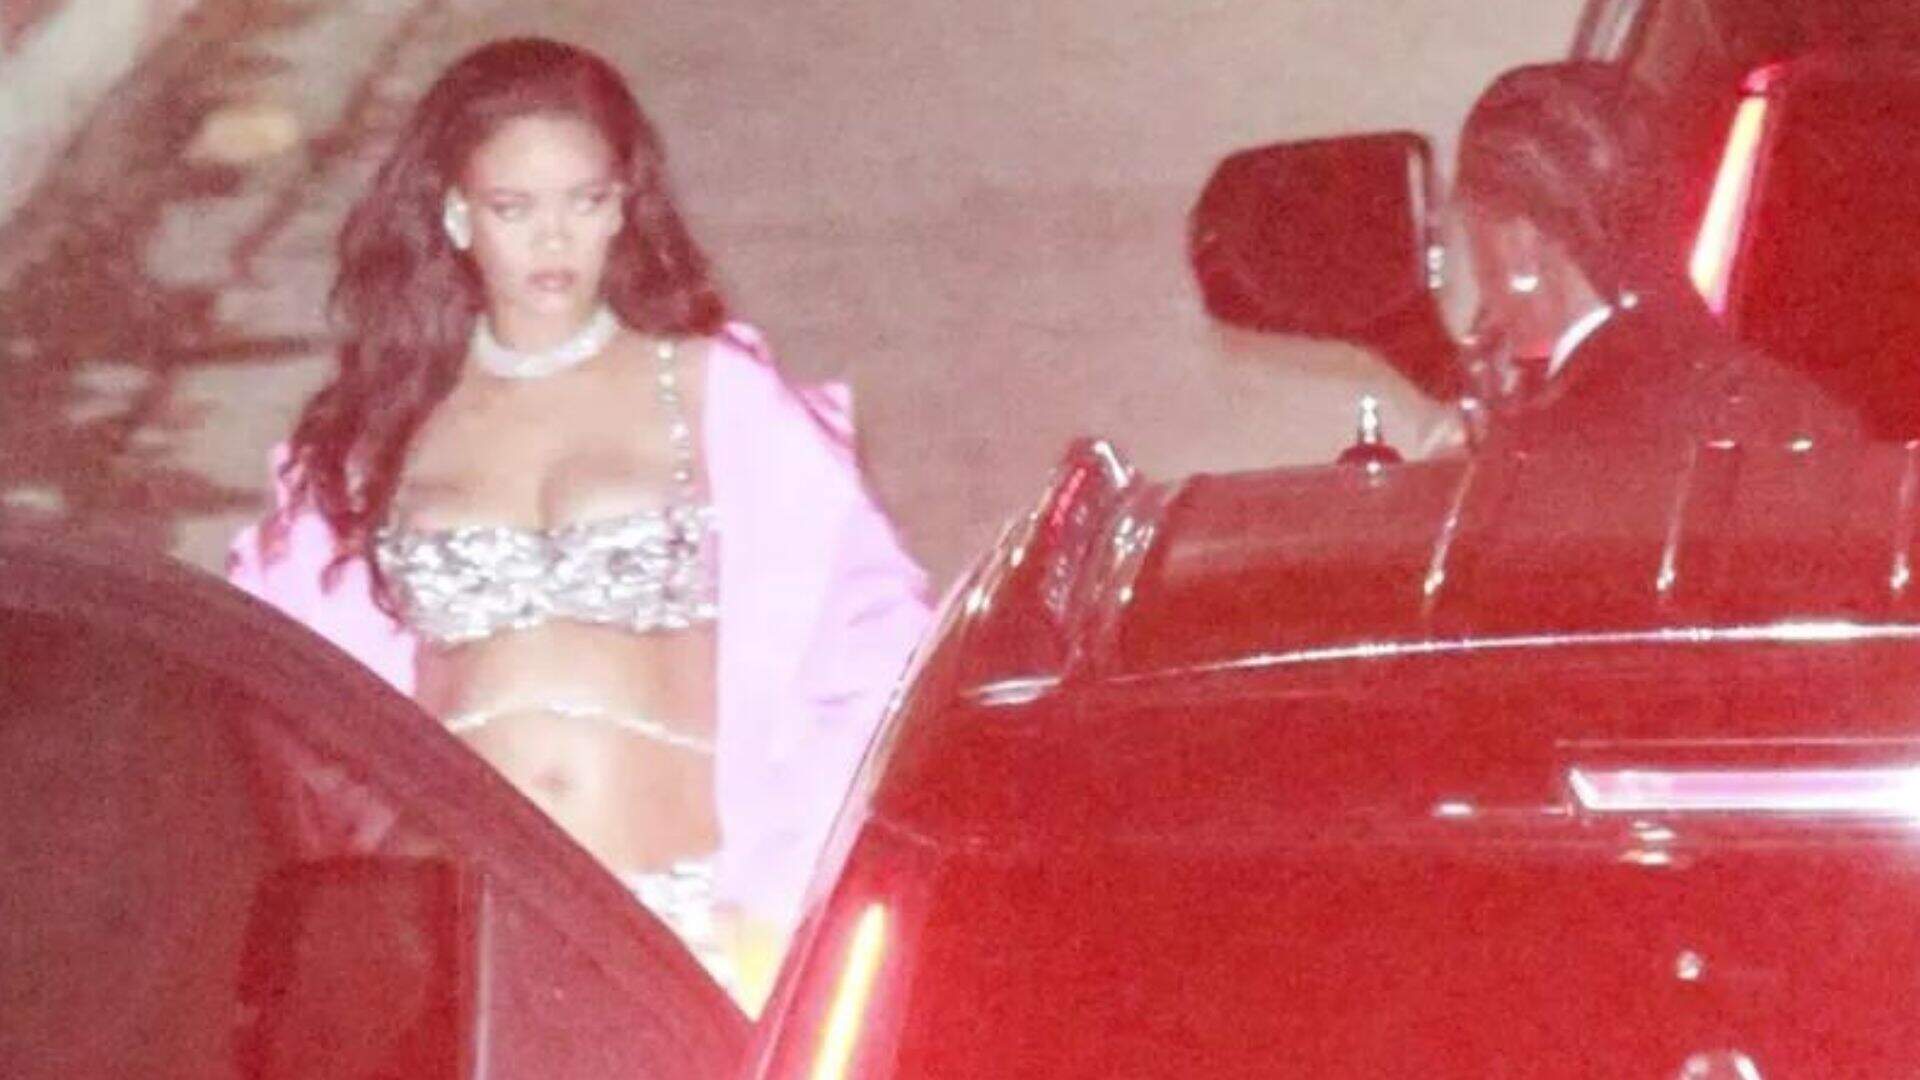 Puro luxo! Rihanna usa look de diamantes avaliado em mais de R$ 23,4 milhões